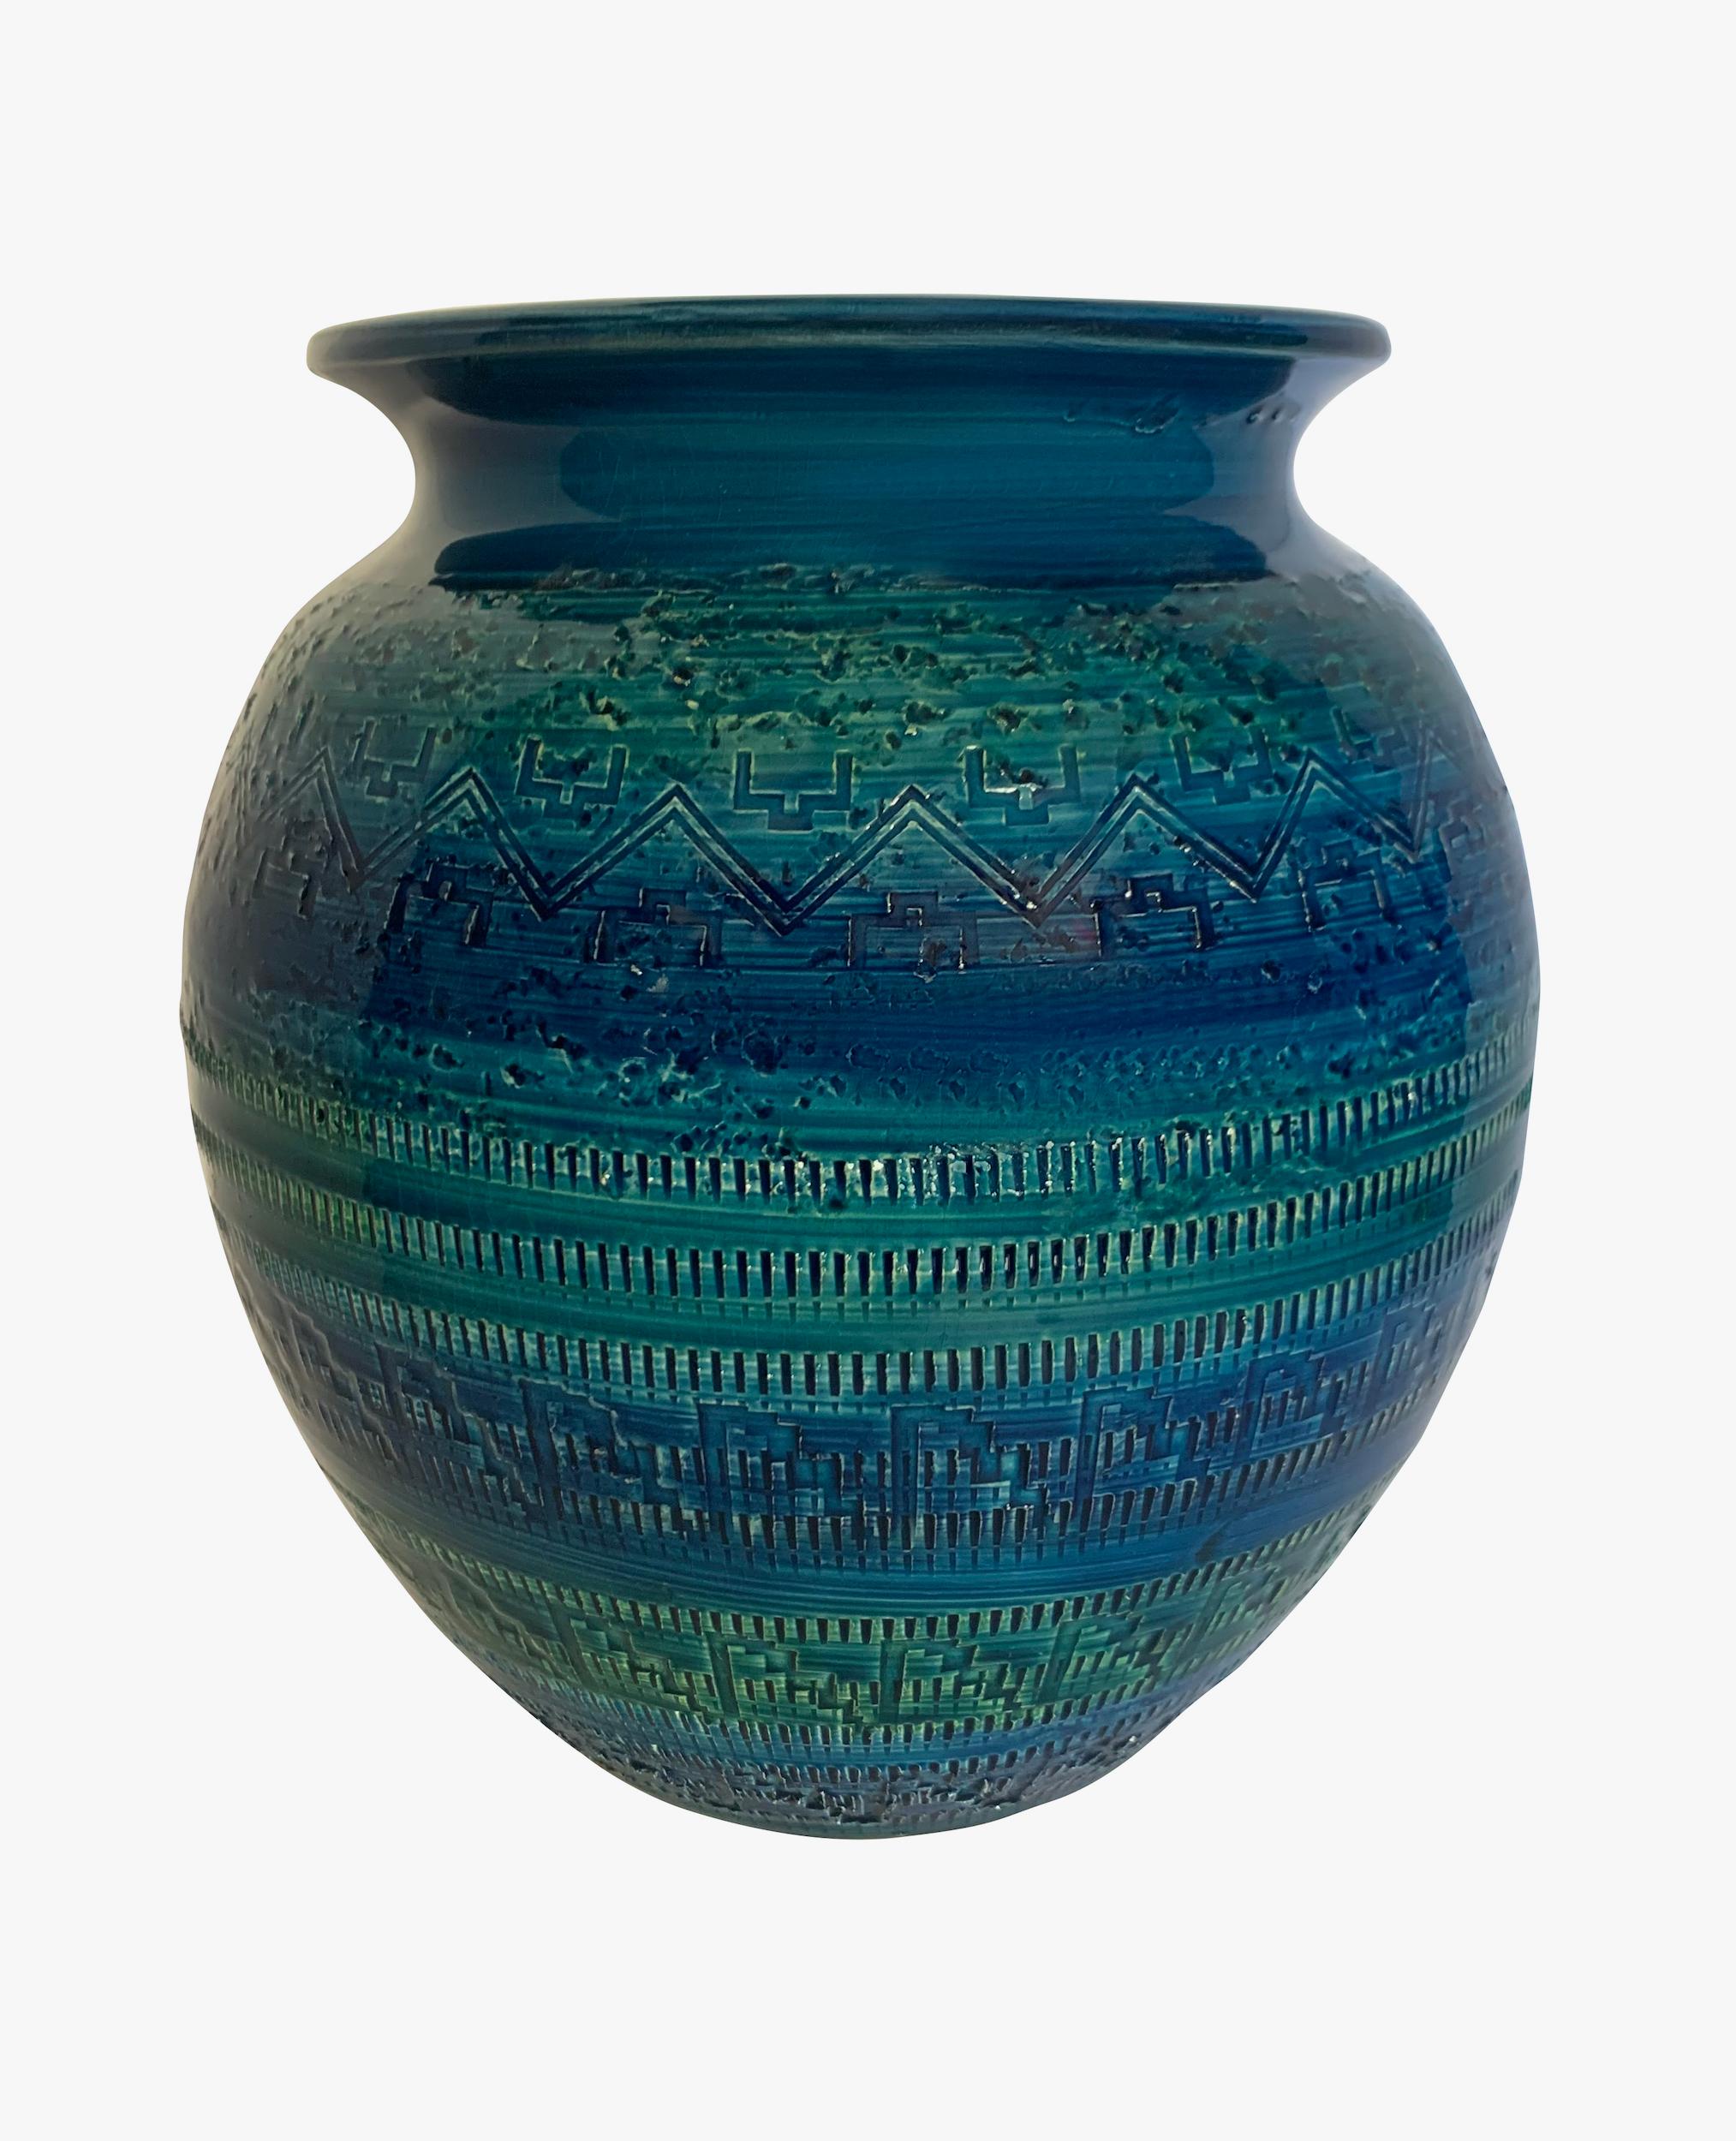 Grand vase français du milieu du siècle, émaillé bleu vif, à motif géométrique.
Large ouverture de la bouche.
Bande verte accentuée.
Peut contenir de l'eau.
D'une grande collection.